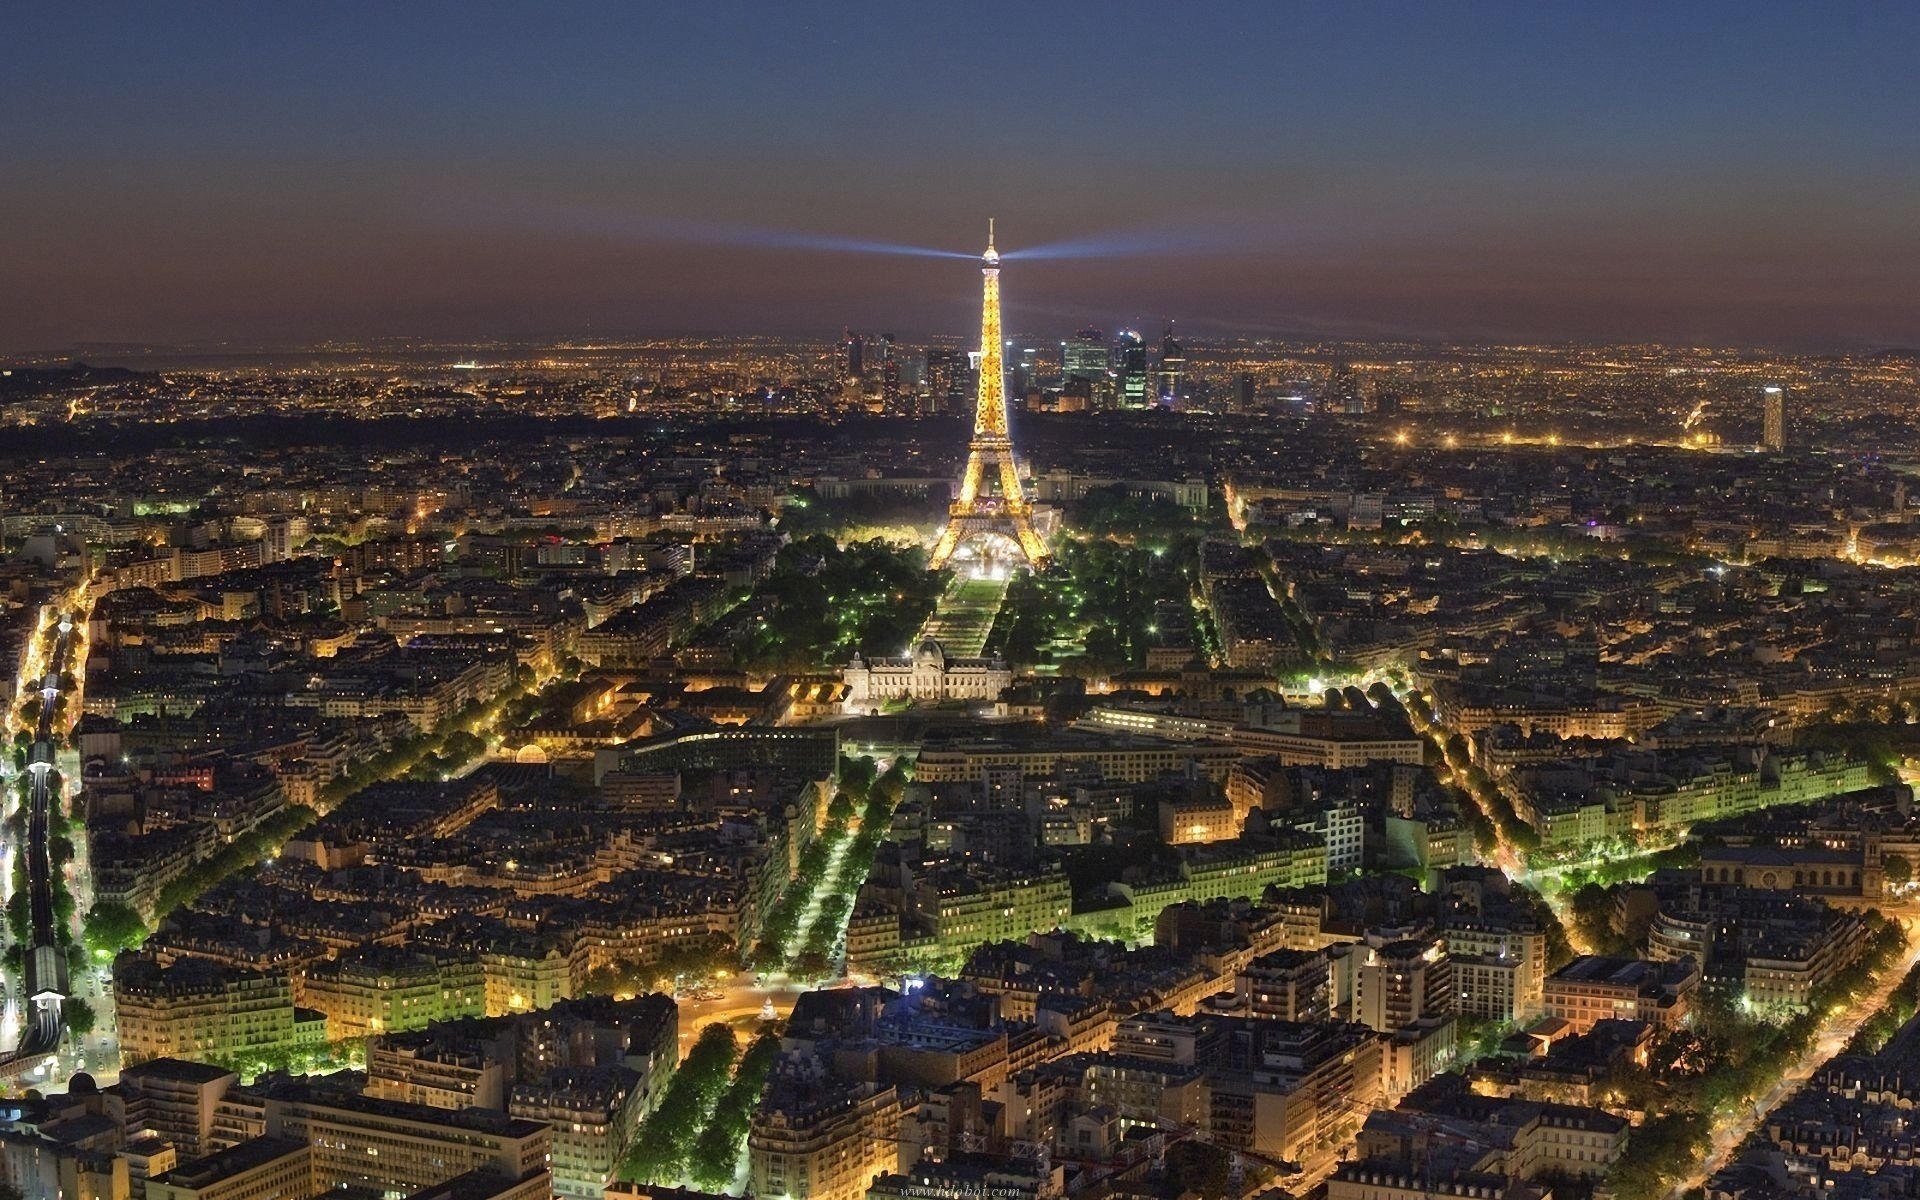 Вид на париж с эйфелевой башни. Эйфелева башня в Париже. Ночной Париж Эйфелева башня. Панорама Парижа с Эйфелевой башни. Париж вид на Эйфелеву башню издалека.